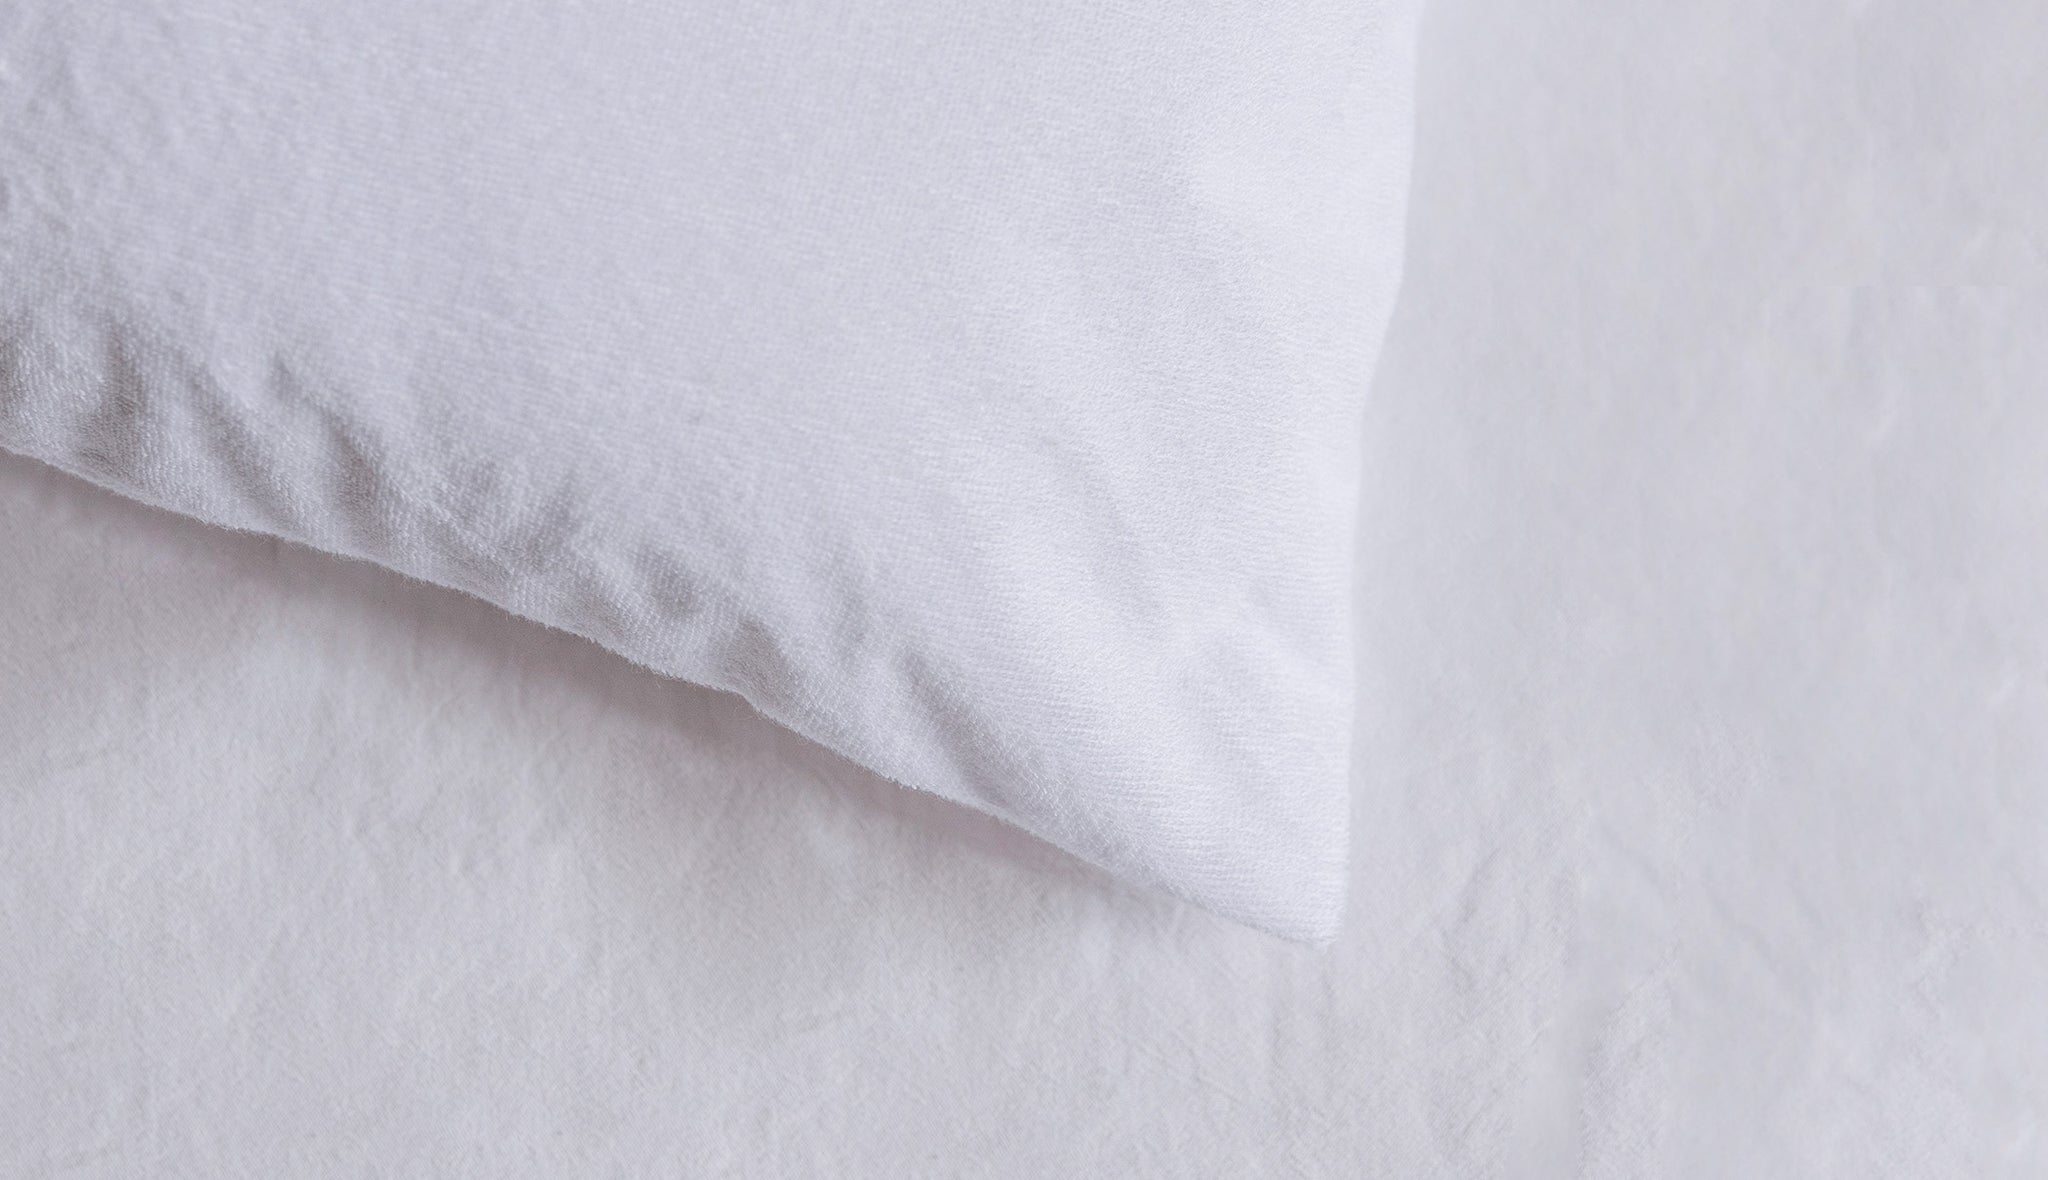 Protège-oreiller imperméable en tissu éponge